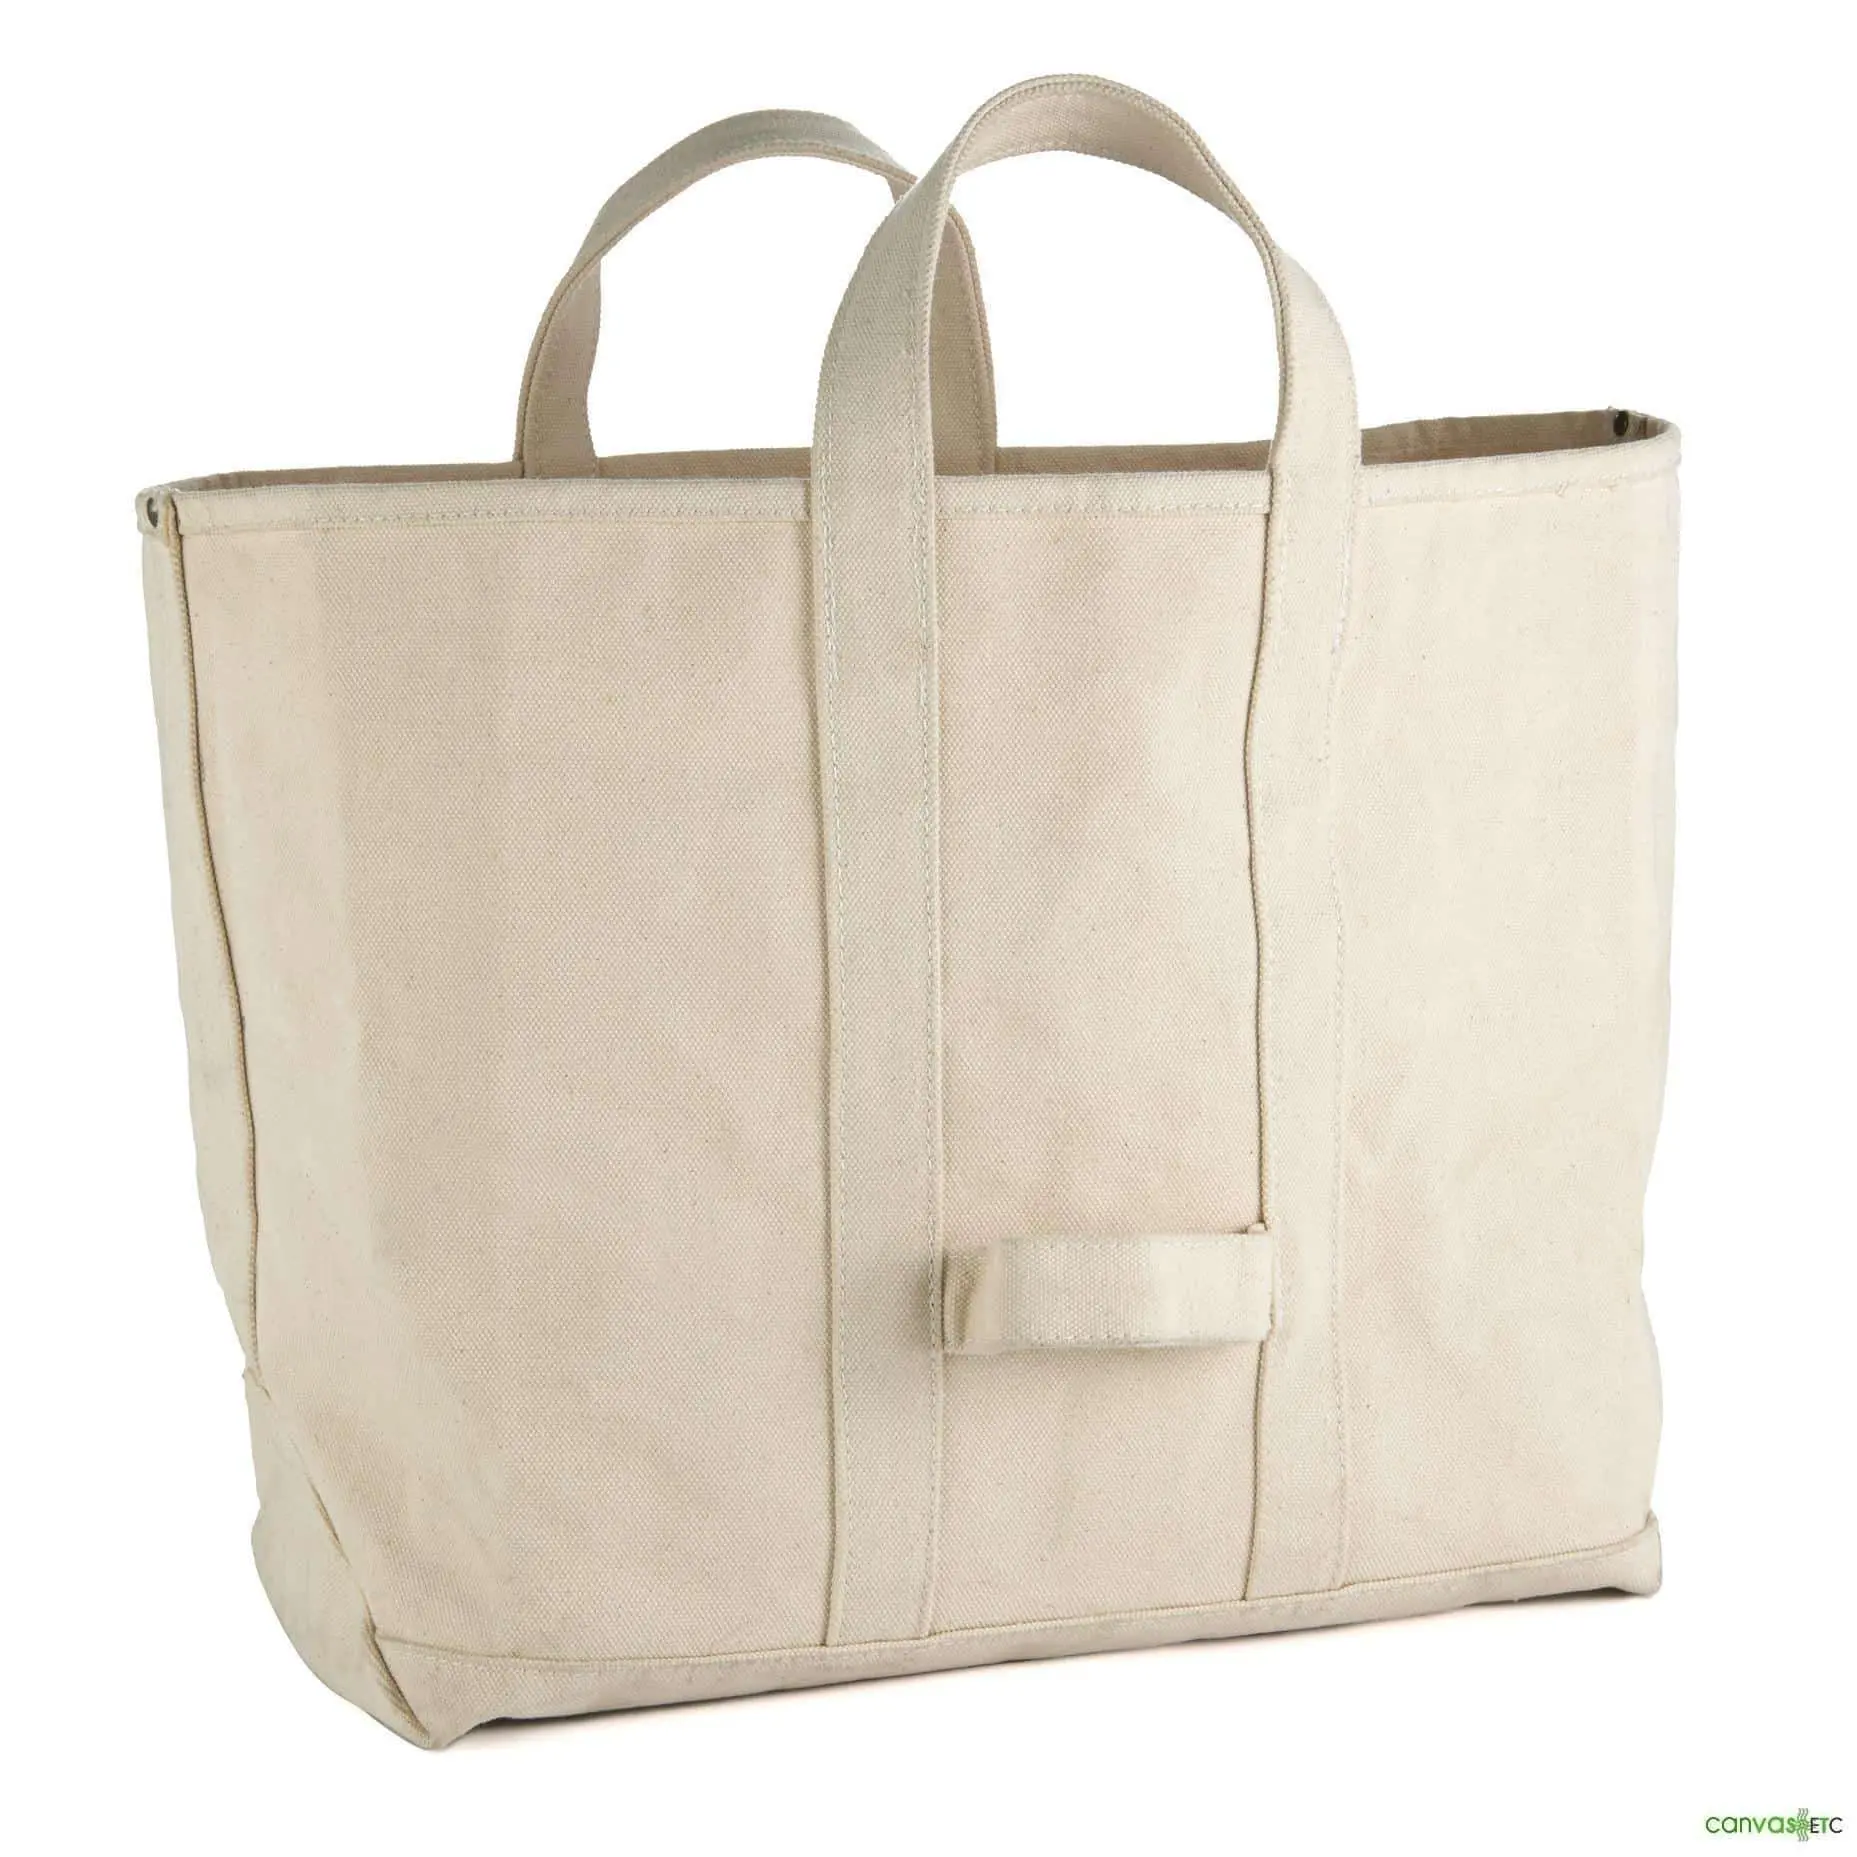 Bolsa de tecido pesado com zíper pequeno e bolso externo sacola de papel de lona suave venda imperdível